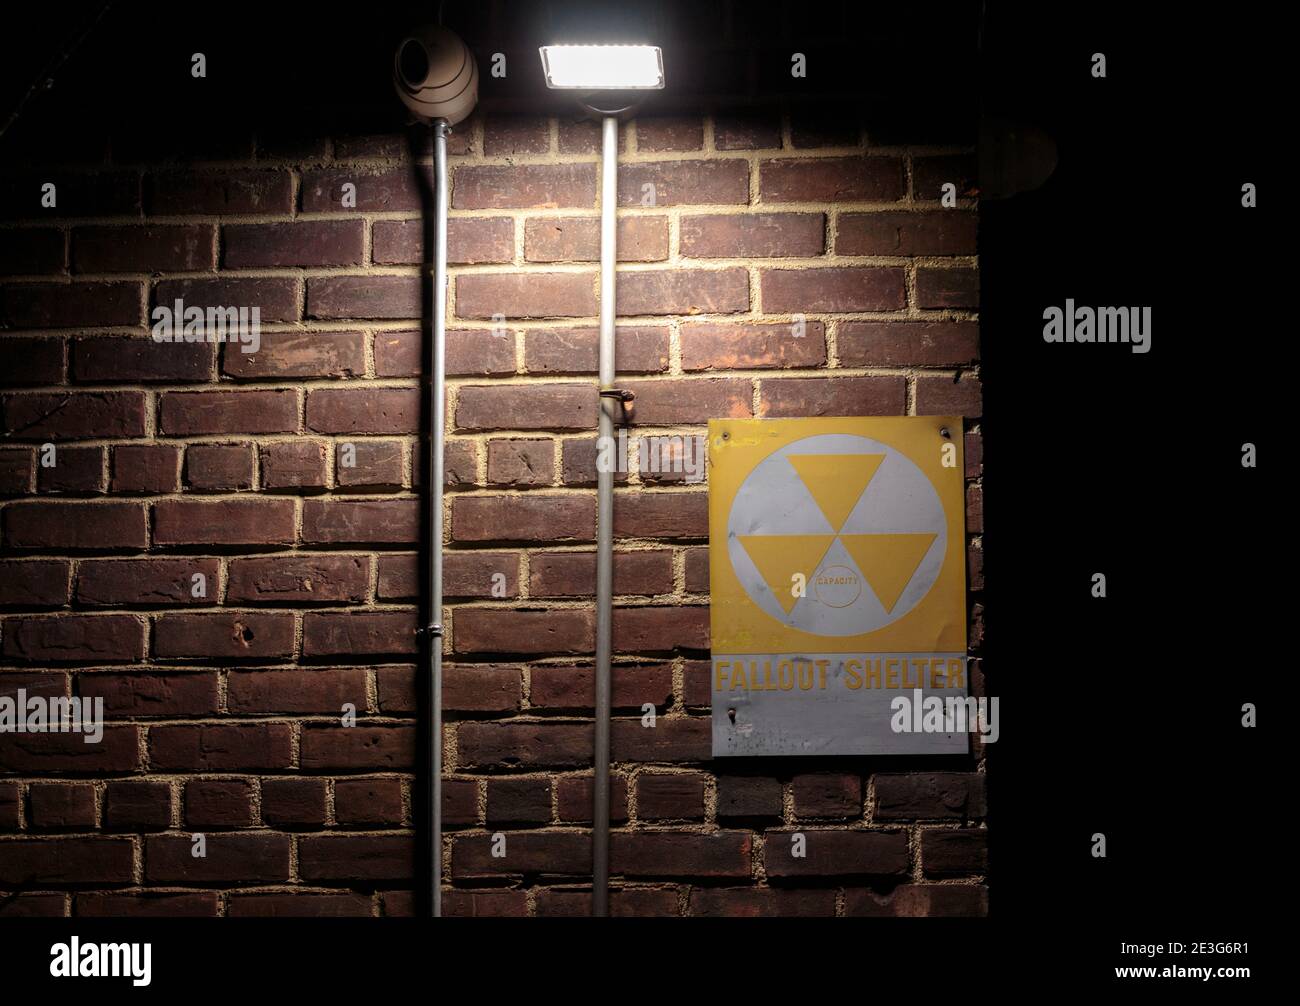 Gelb und weiß Fallout Schutzschild auf einer Mauer in der Nacht mit einem Scheinwerfer leuchtet auf sie Schaffung einer gruseligen, gruselige Szene evozierend Gefahr Stockfoto